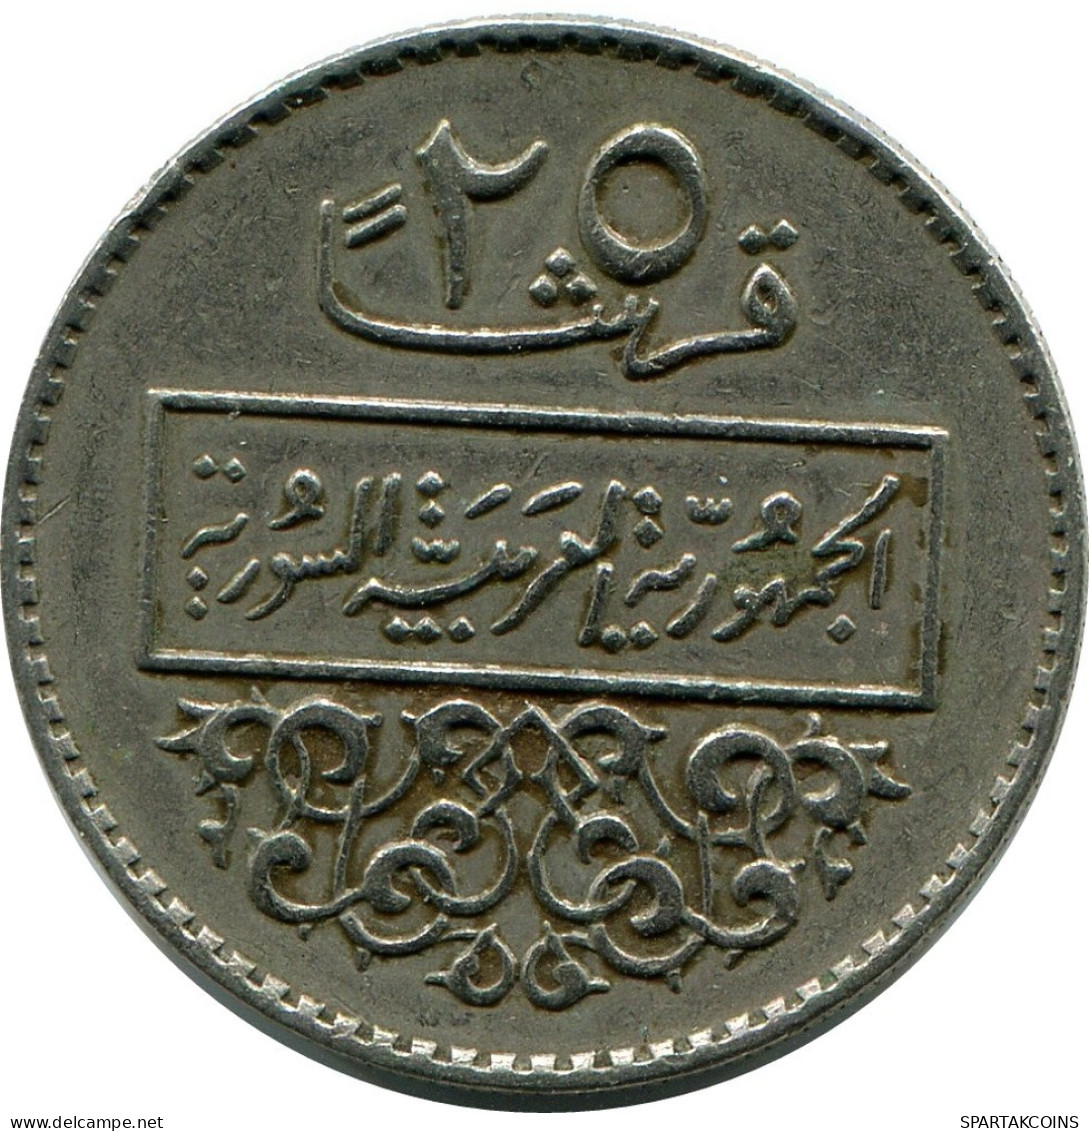 25 QIRSH / PIASTRES 1979 SIRIA SYRIA Islámico Moneda #AP554.E.A - Siria